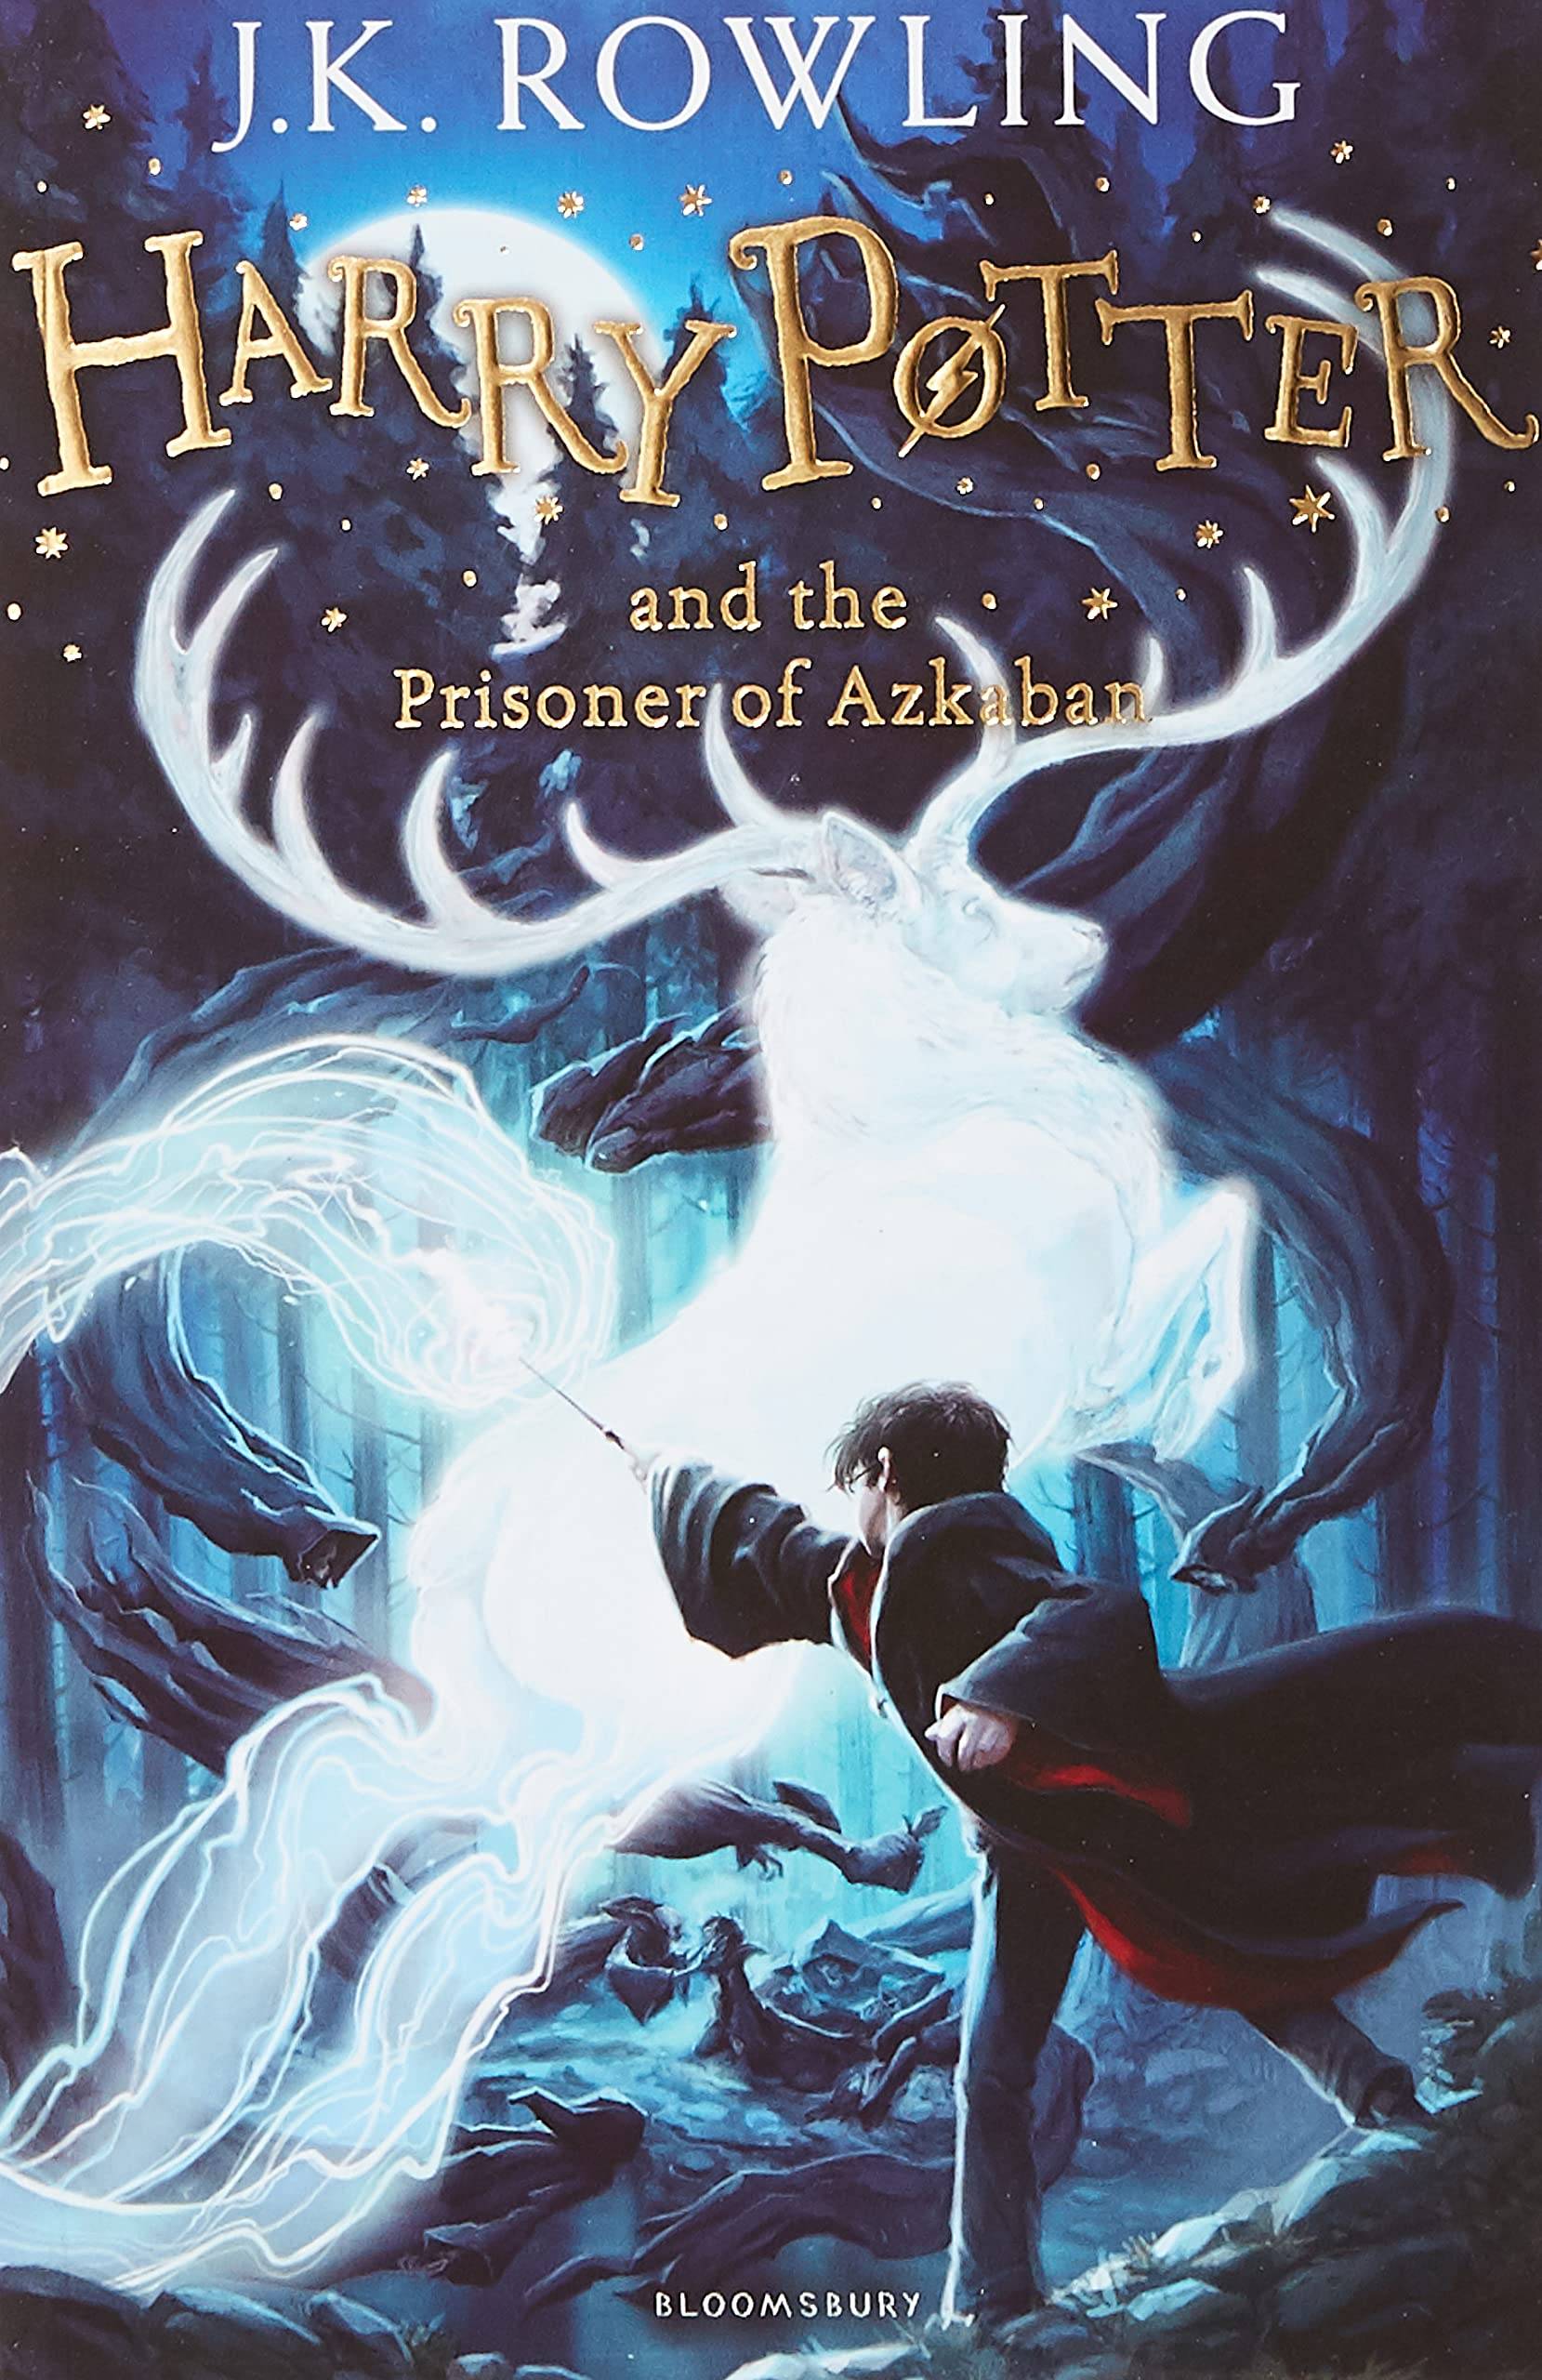 IMG : Harry Potter and the prisoner of Azkaban